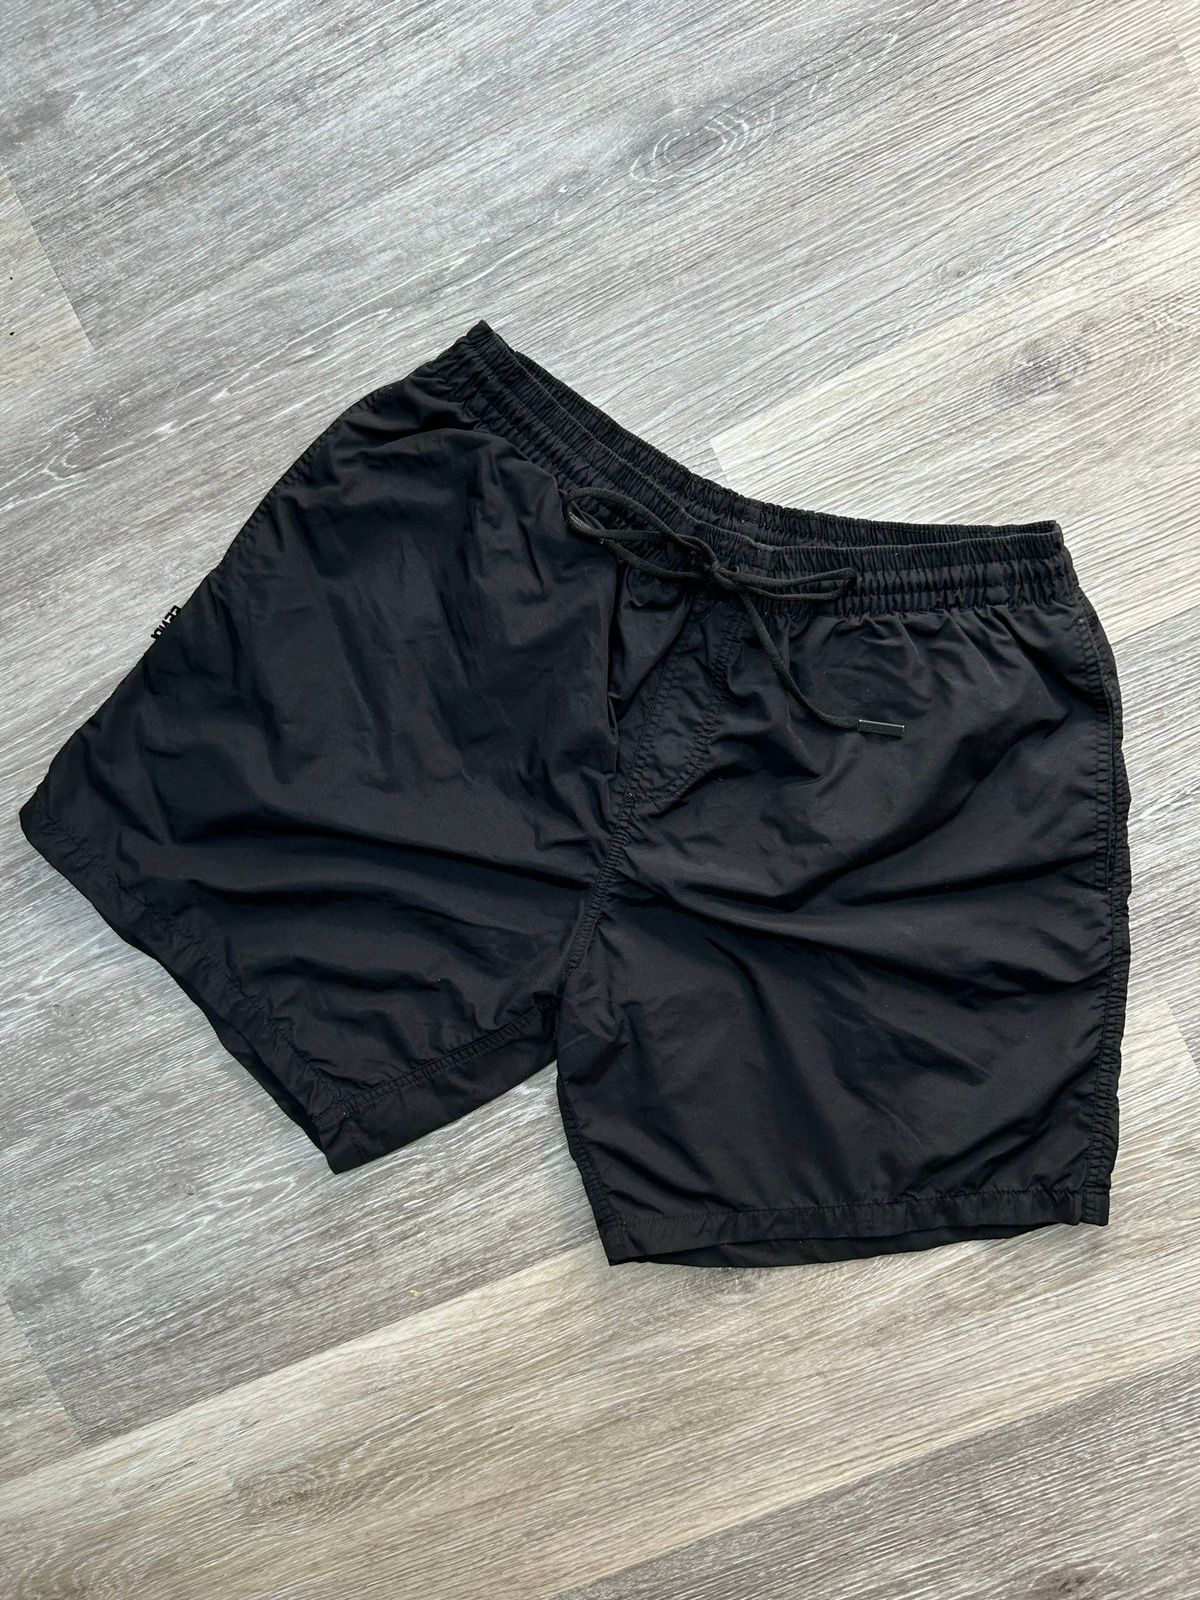 Fendi Fendi Reactive Monogram swim shorts | Grailed